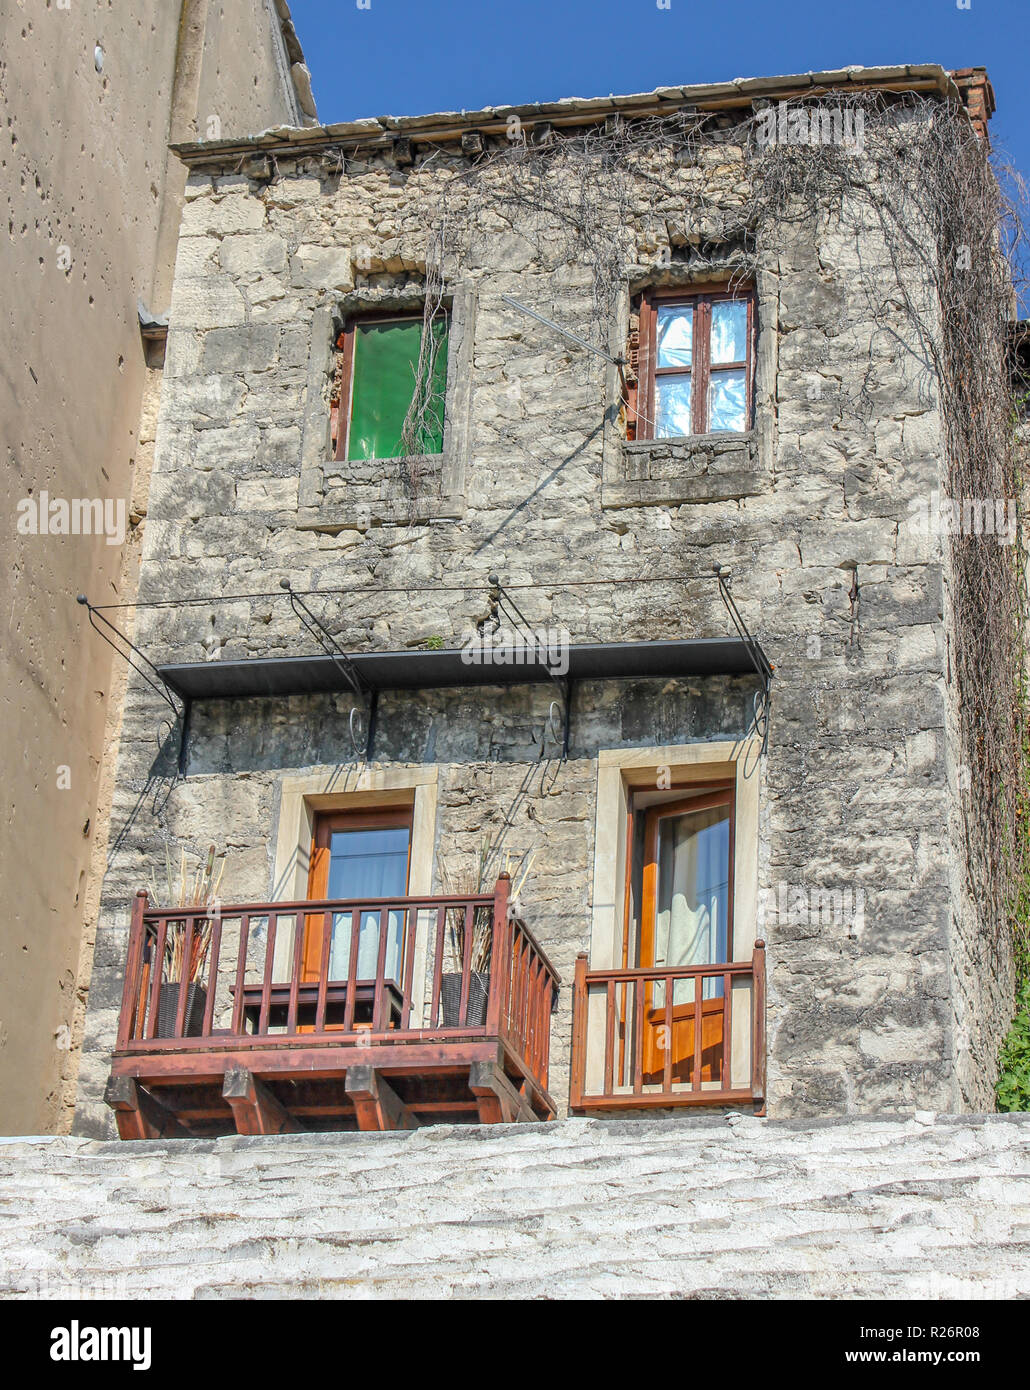 Août 2013, Mostar. Une vieille maison en pierre traditionnelle avec balcon terrasse dans la vieille ville. Trous de balle de la guerre sont visibles sur le mur de la nex Banque D'Images